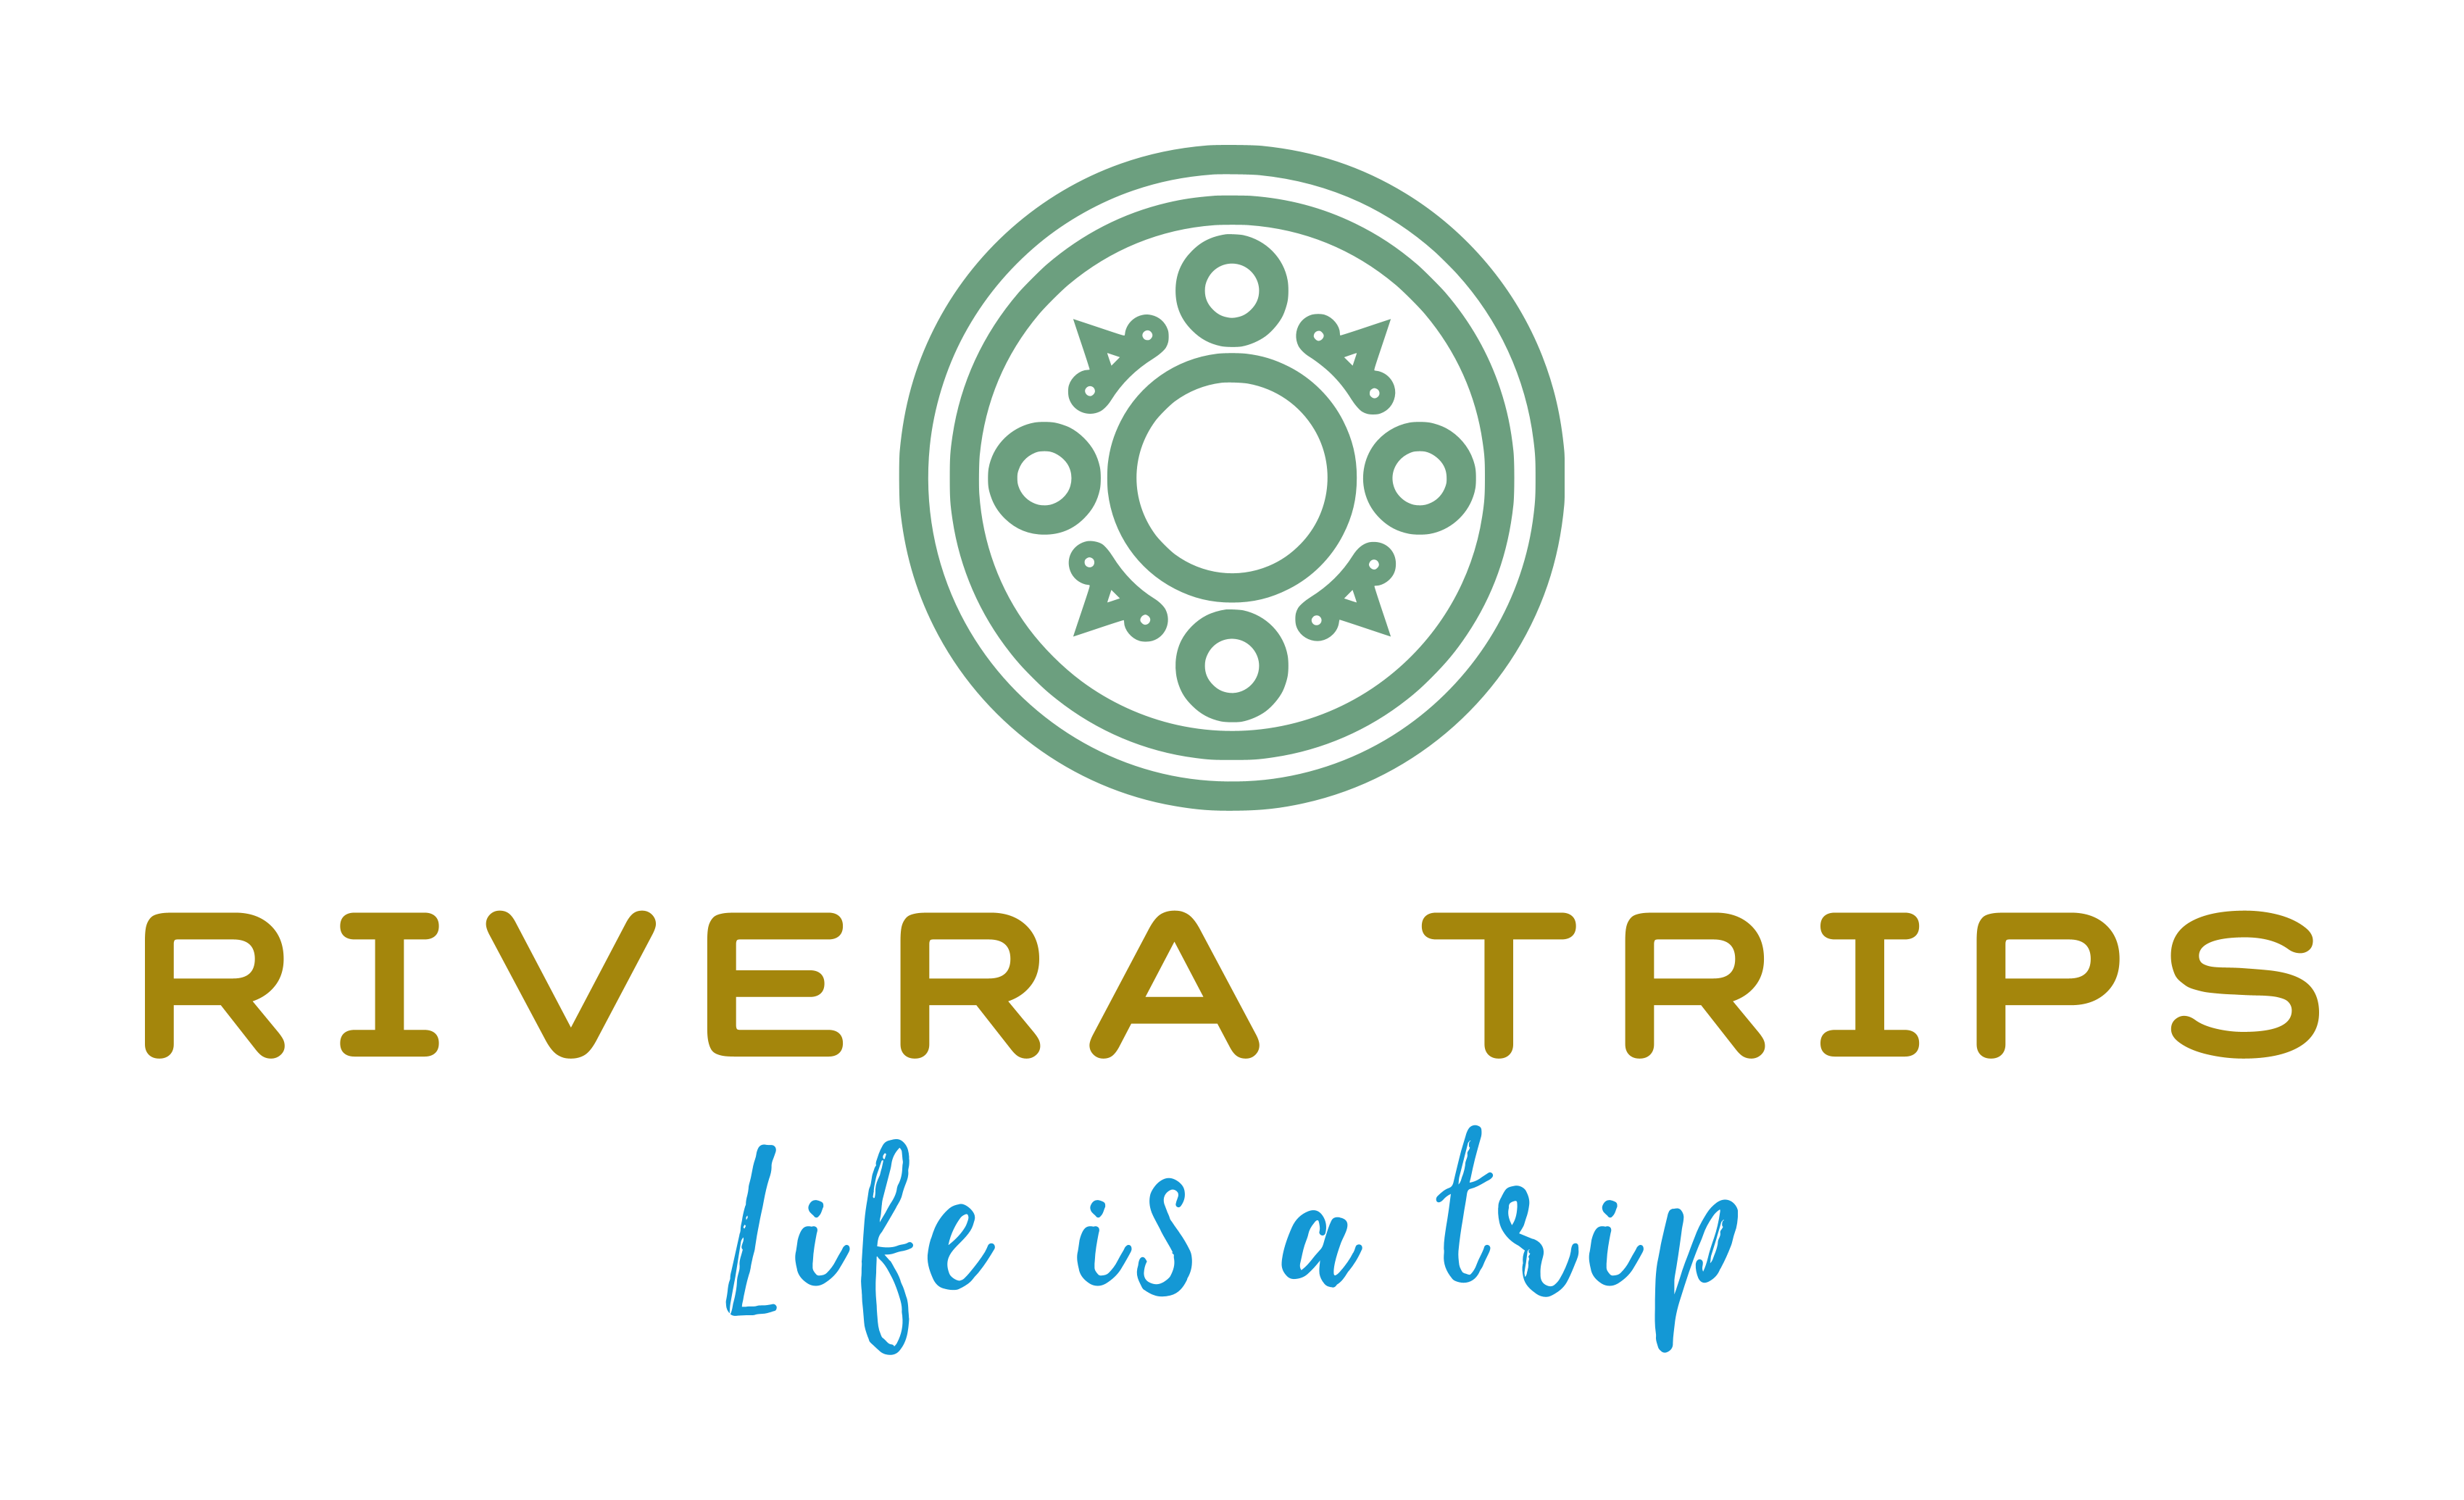 RIVERA TRIPS